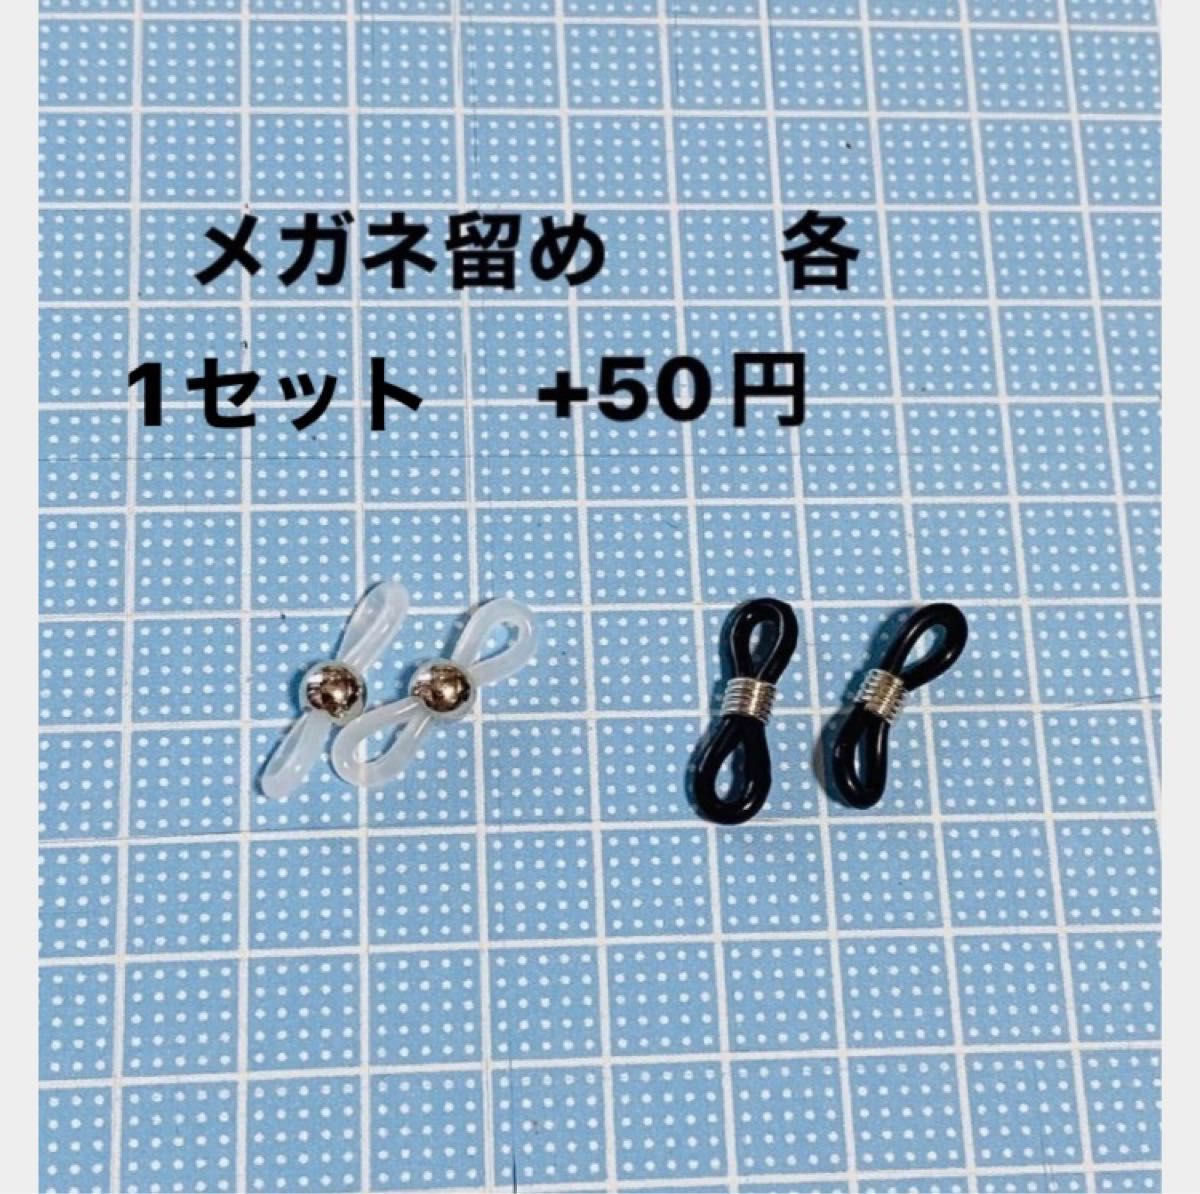 No.384★クローバー&蝶々★マスク、メガネストラップ★レース編みストラップ★ハンドメイド